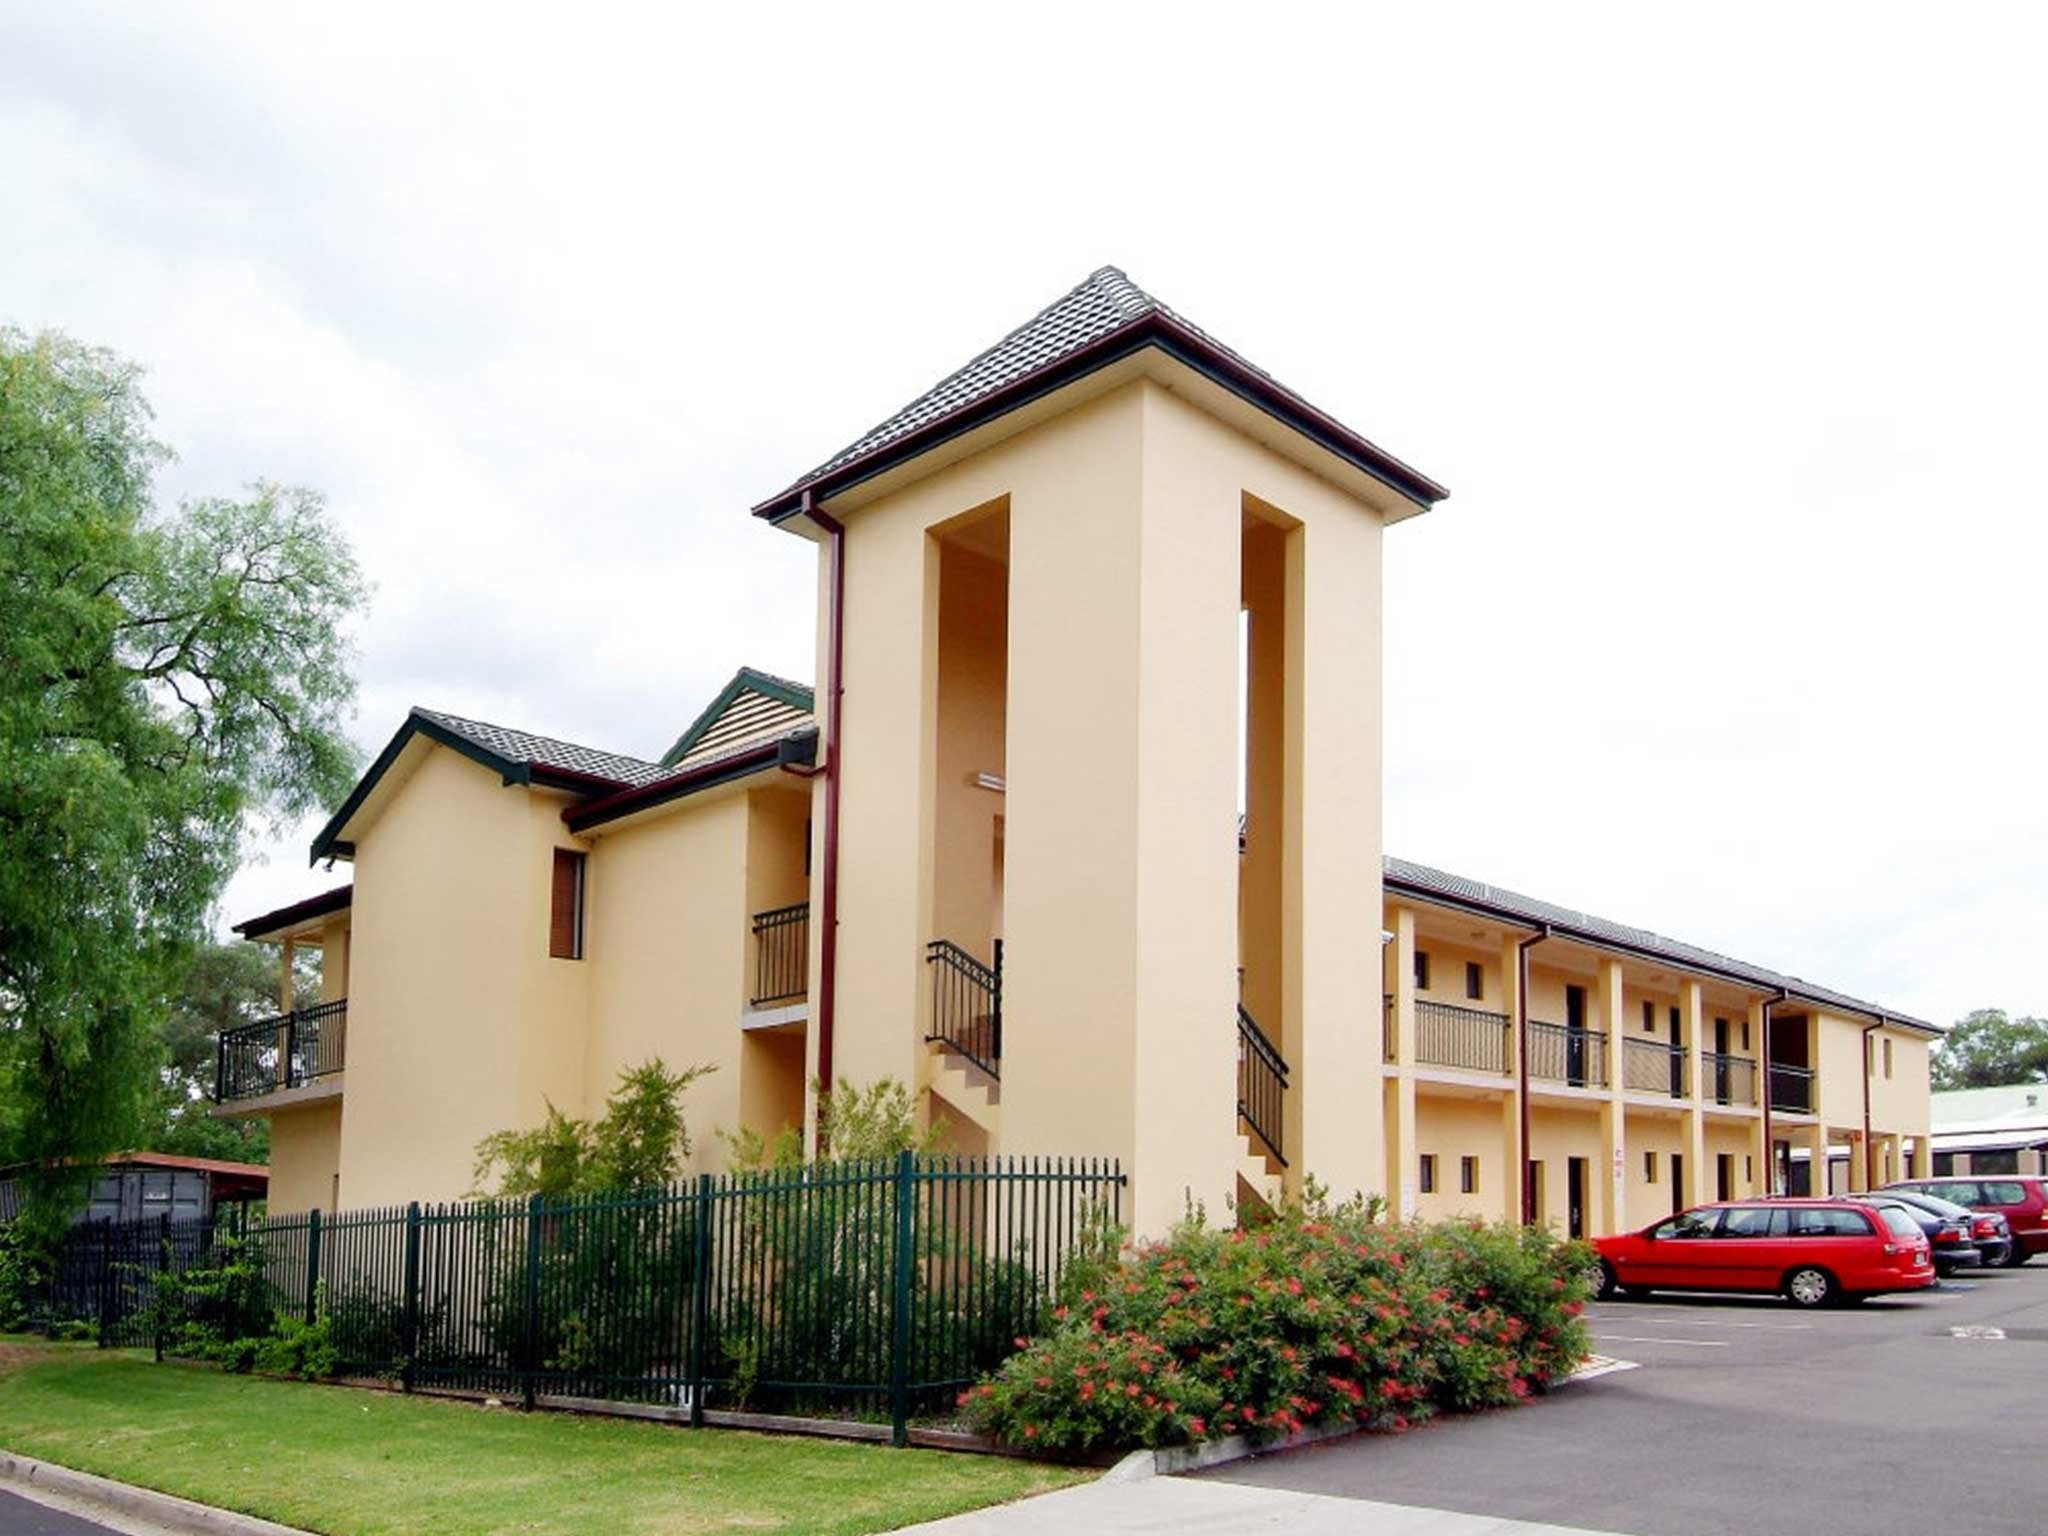 St Marys Park View Motel - Wagga Wagga Accommodation